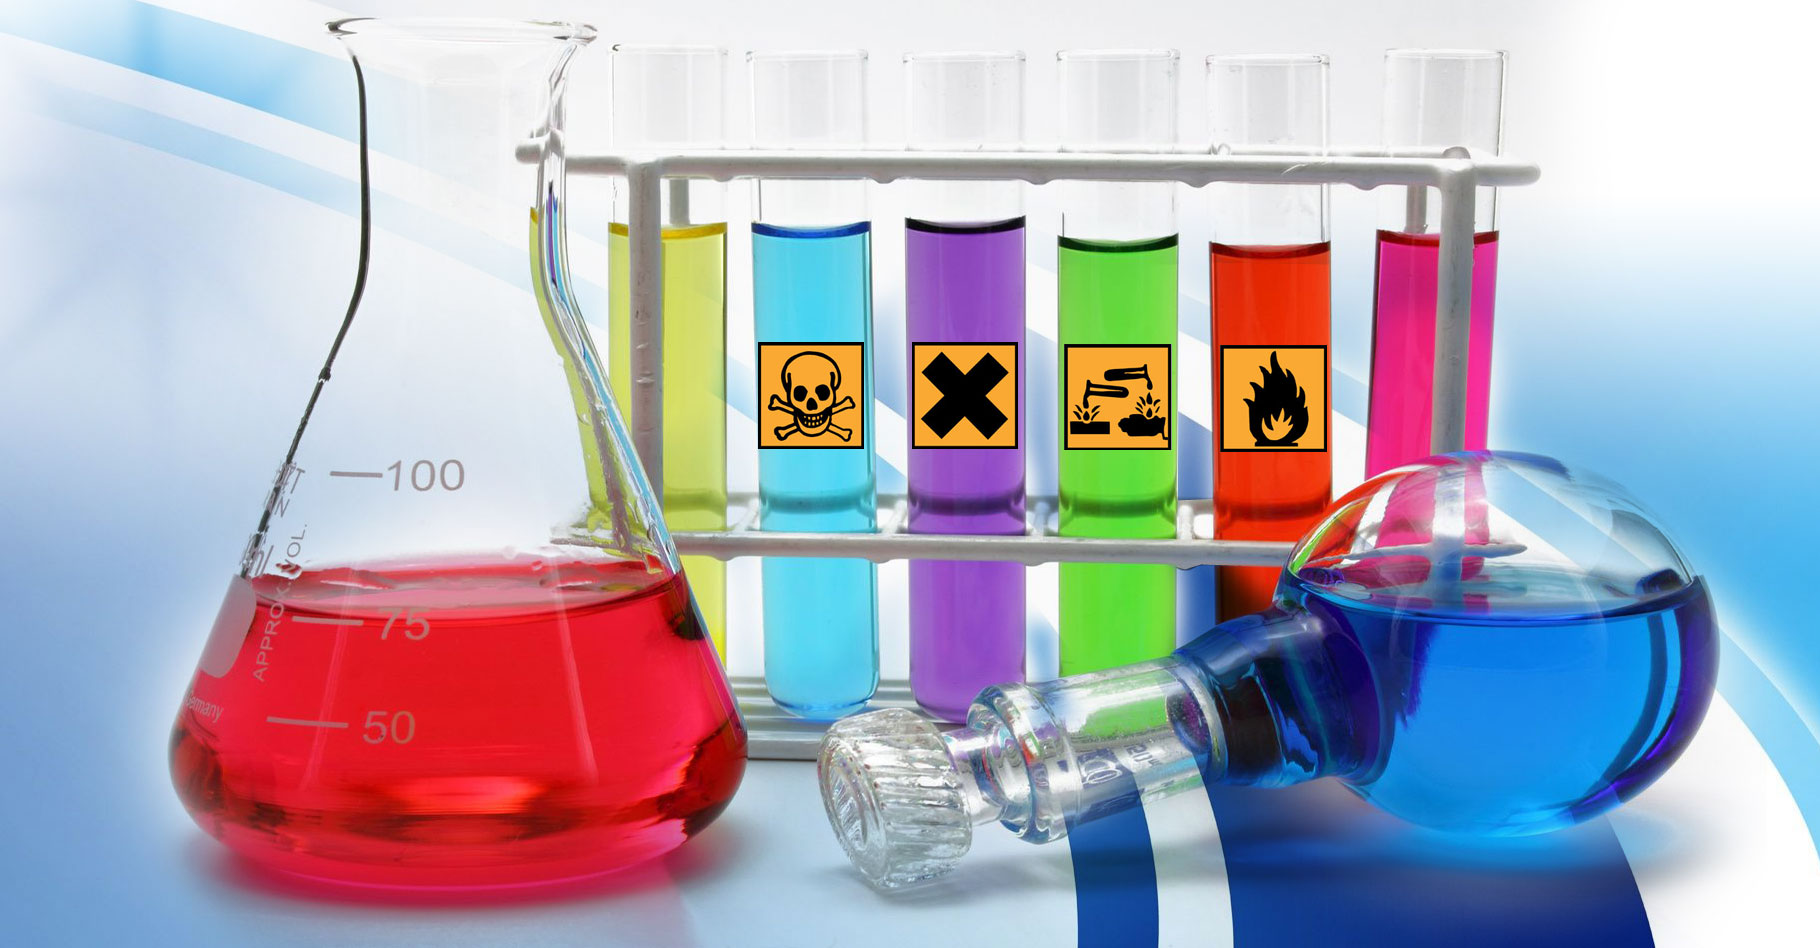 Les dangers des produits chimiques. © Domaine public